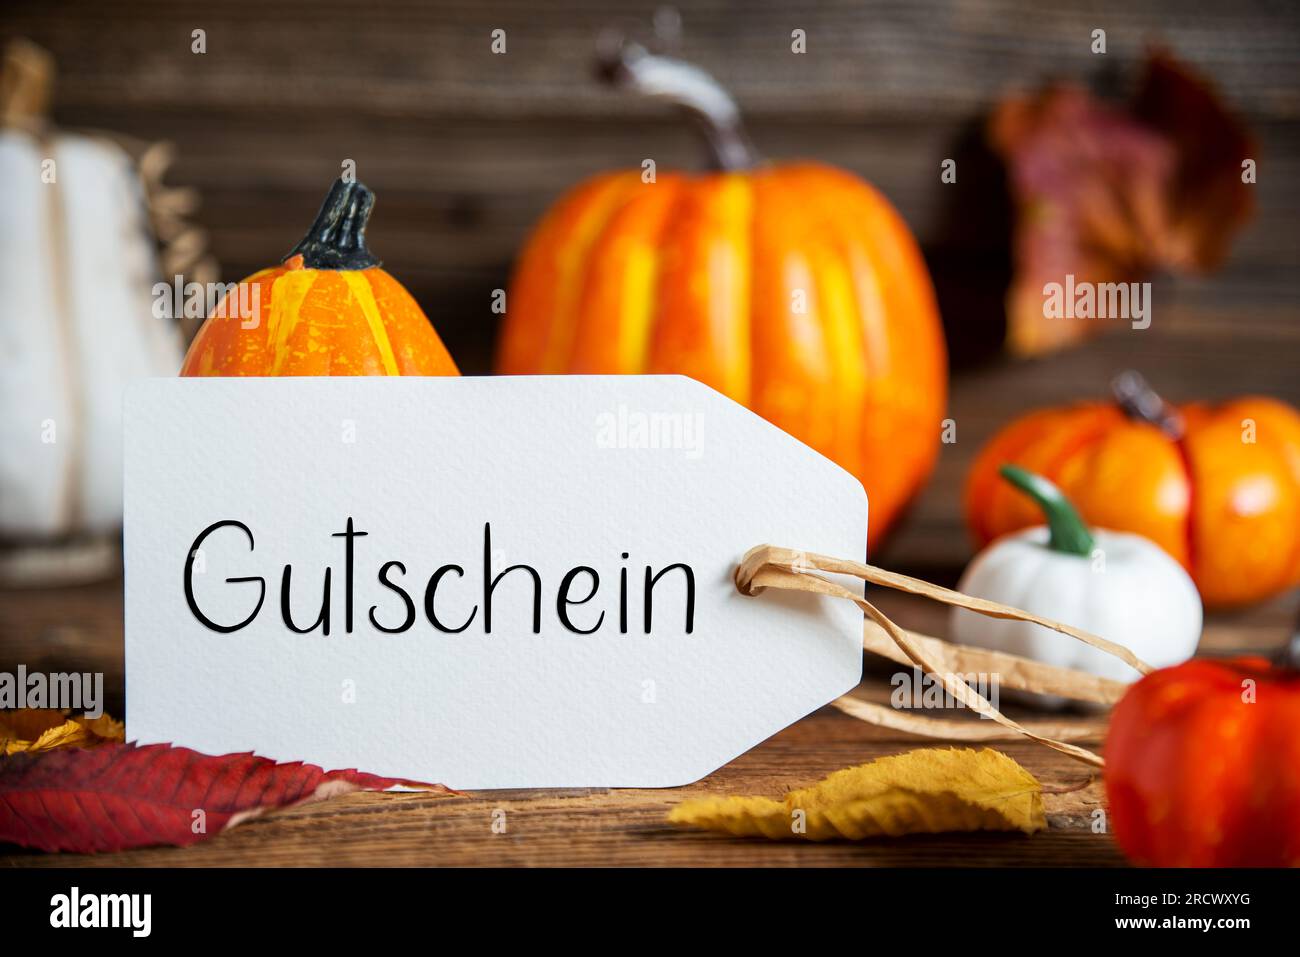 Decorazioni autunnali con zucche arancioni, decorazioni autunnali rustiche con etichetta con testo tedesco Gutschein, che significa voucher in inglese Foto Stock